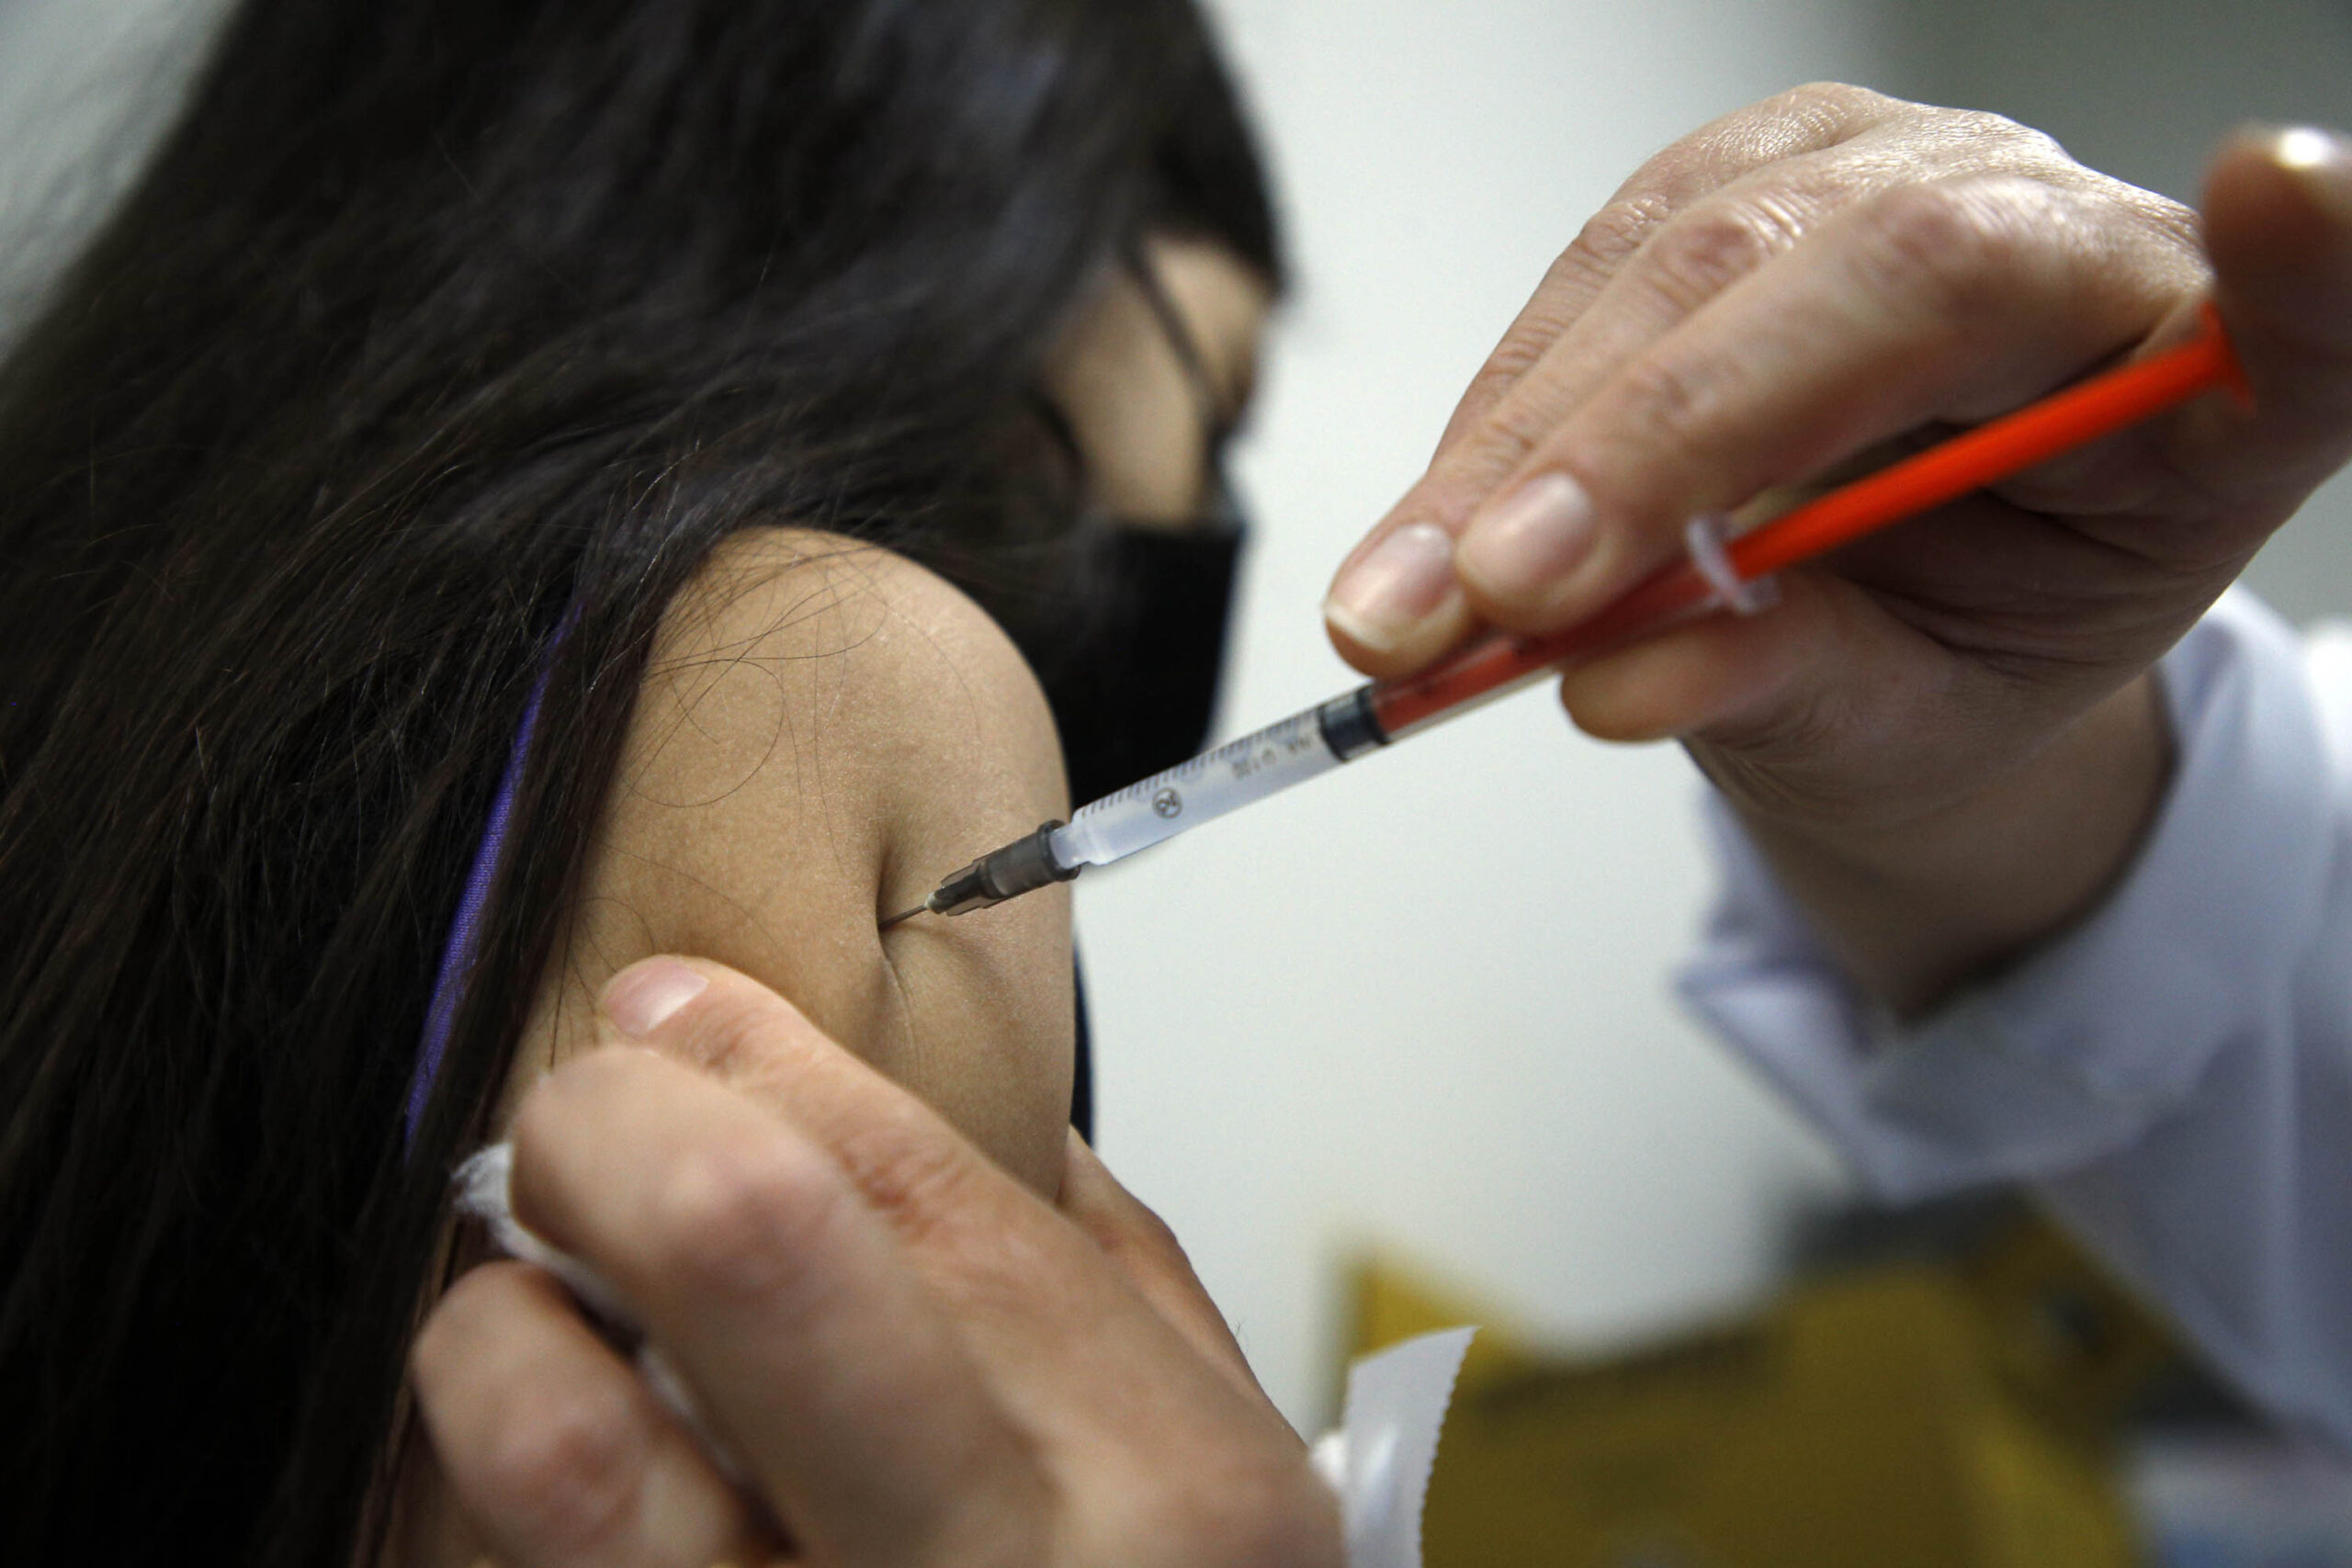 Unidades municipais de saúde farão mutirão de vacinação no Paraná neste sábado